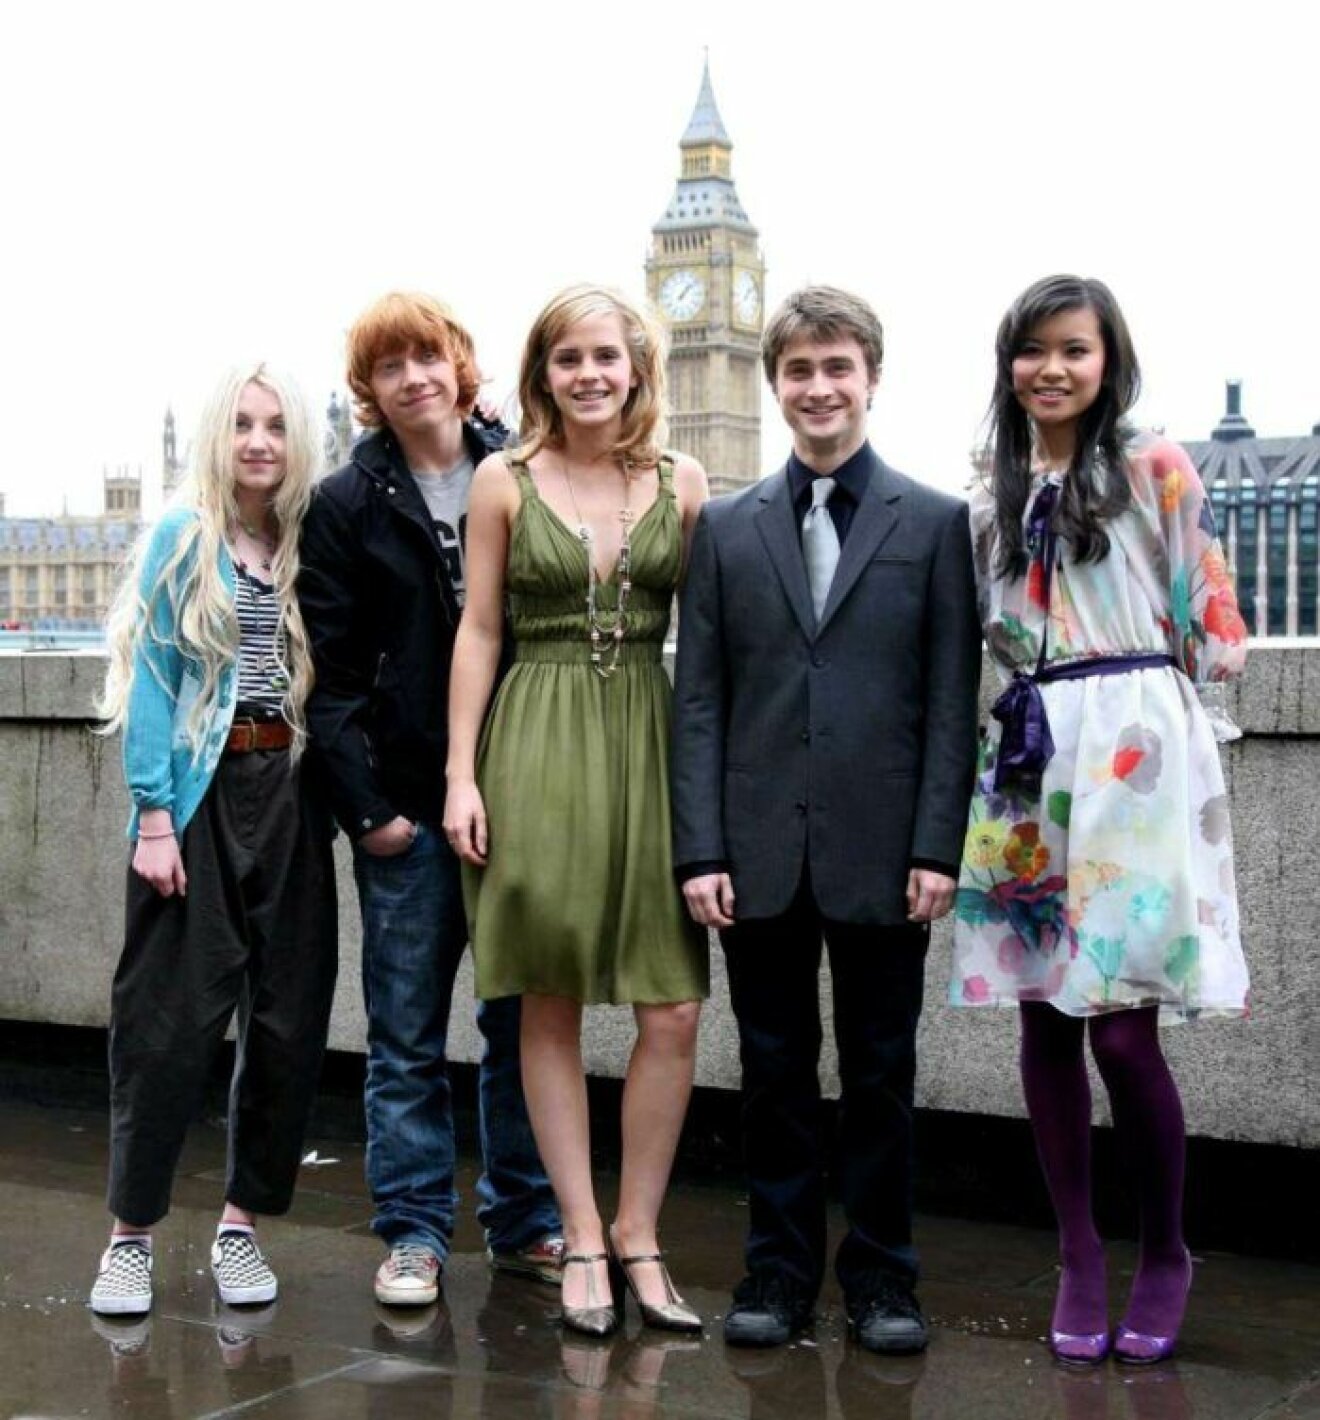 Evanna Lynch, Rupert Grint, Emma Watson, Daniel Radcliffe och Katie Leung från harry Potter posar tillsammans.